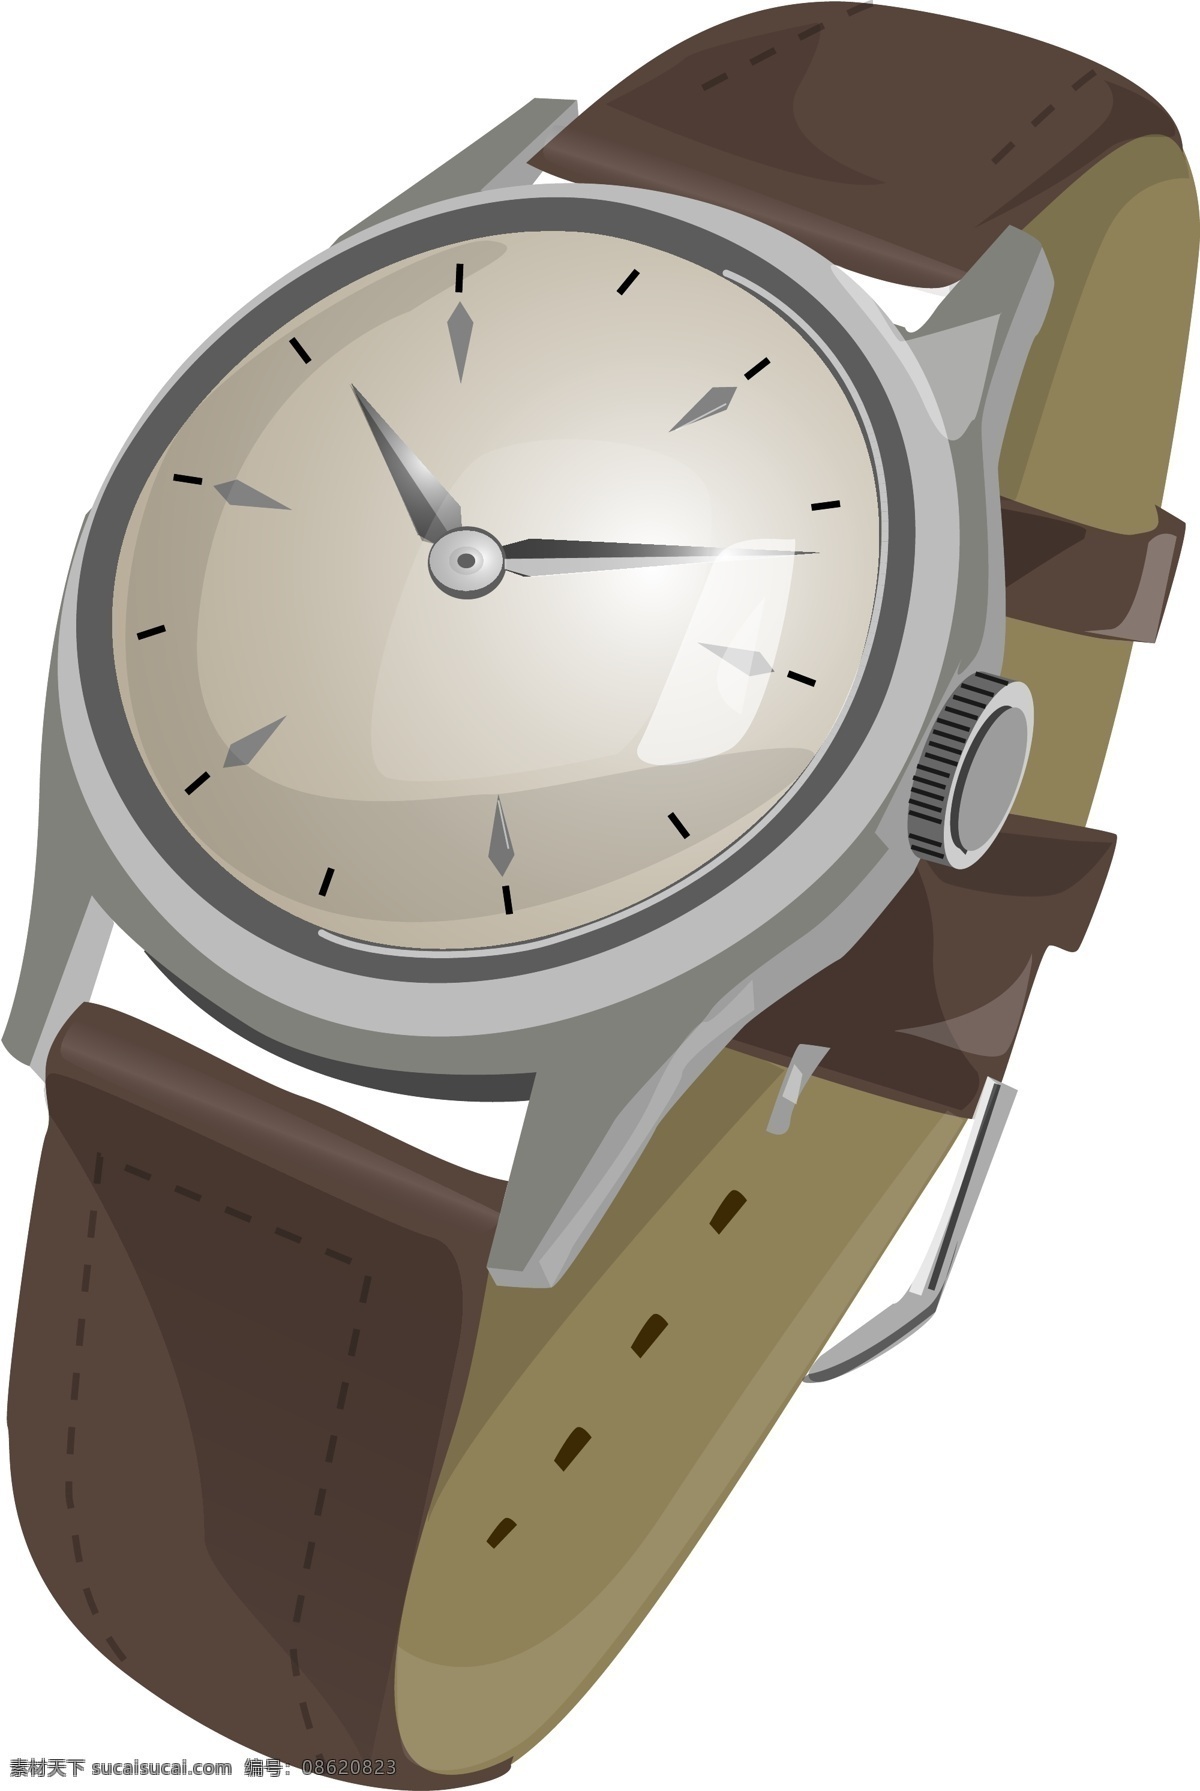 手表矢量素材 手表 腕表 时间 时钟 腕关节 晚 附件 生活百科 生活用品